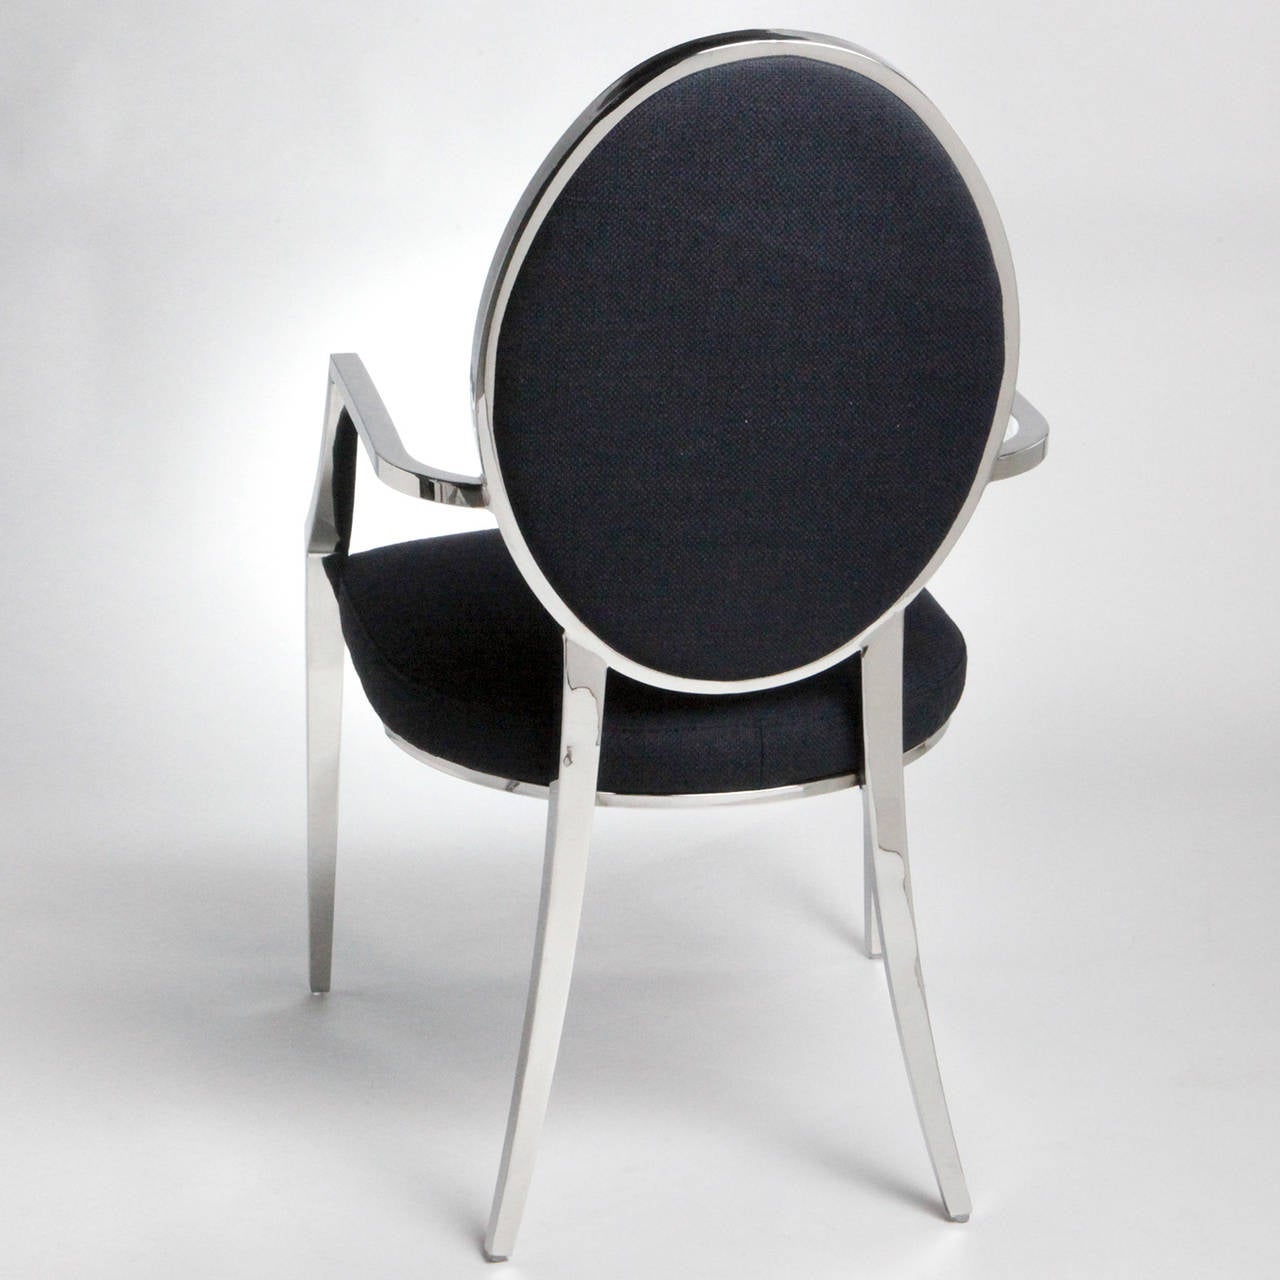 Élégante chaise classique à dossier en cuillère avec un cadre en acier inoxydable. Assise en tissu noir et dossier en tissu touffeté.